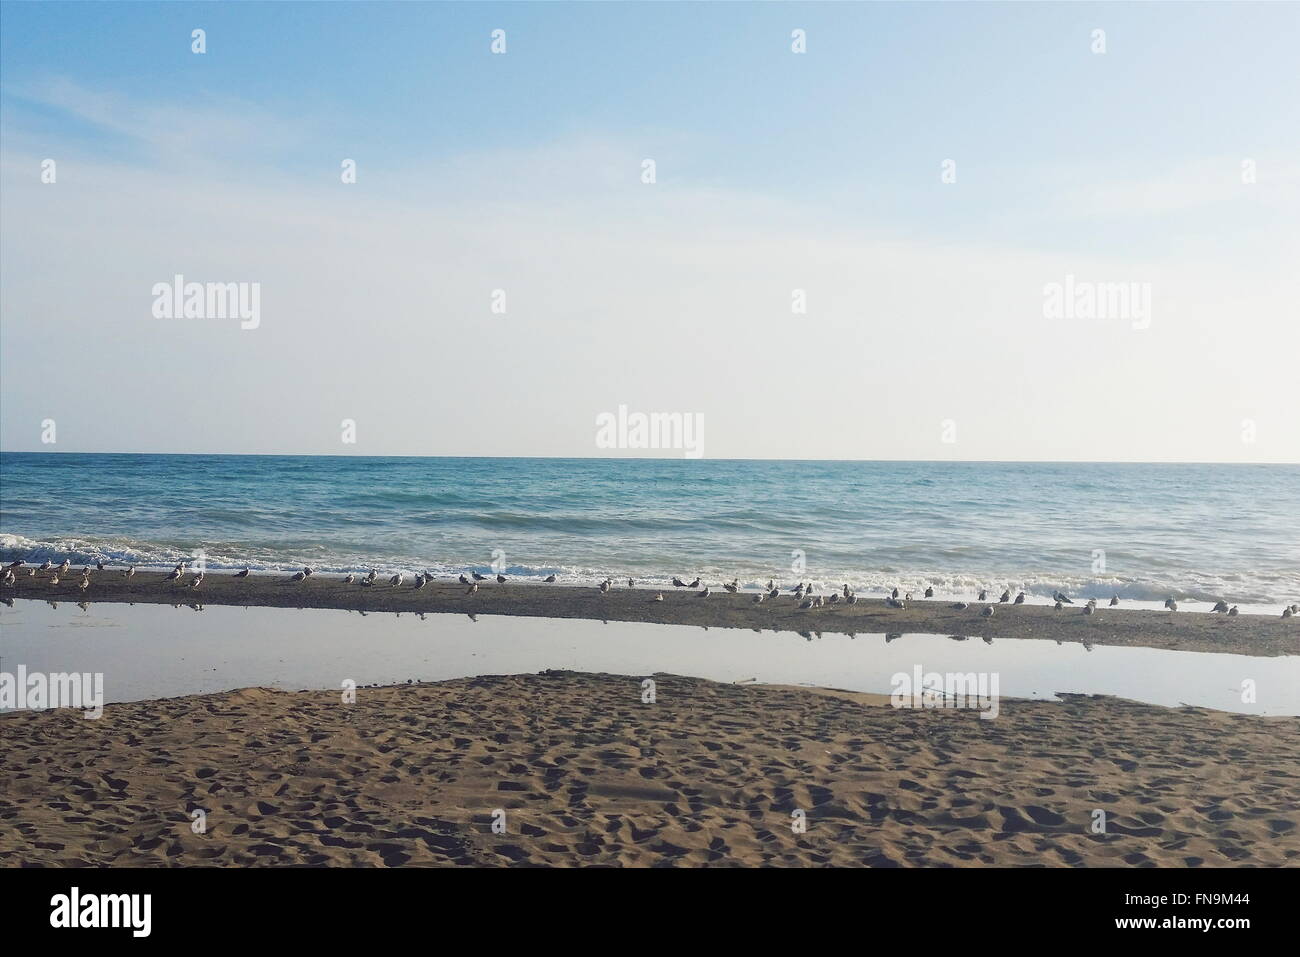 Mouettes sur la plage, Malaga, Espagne Banque D'Images